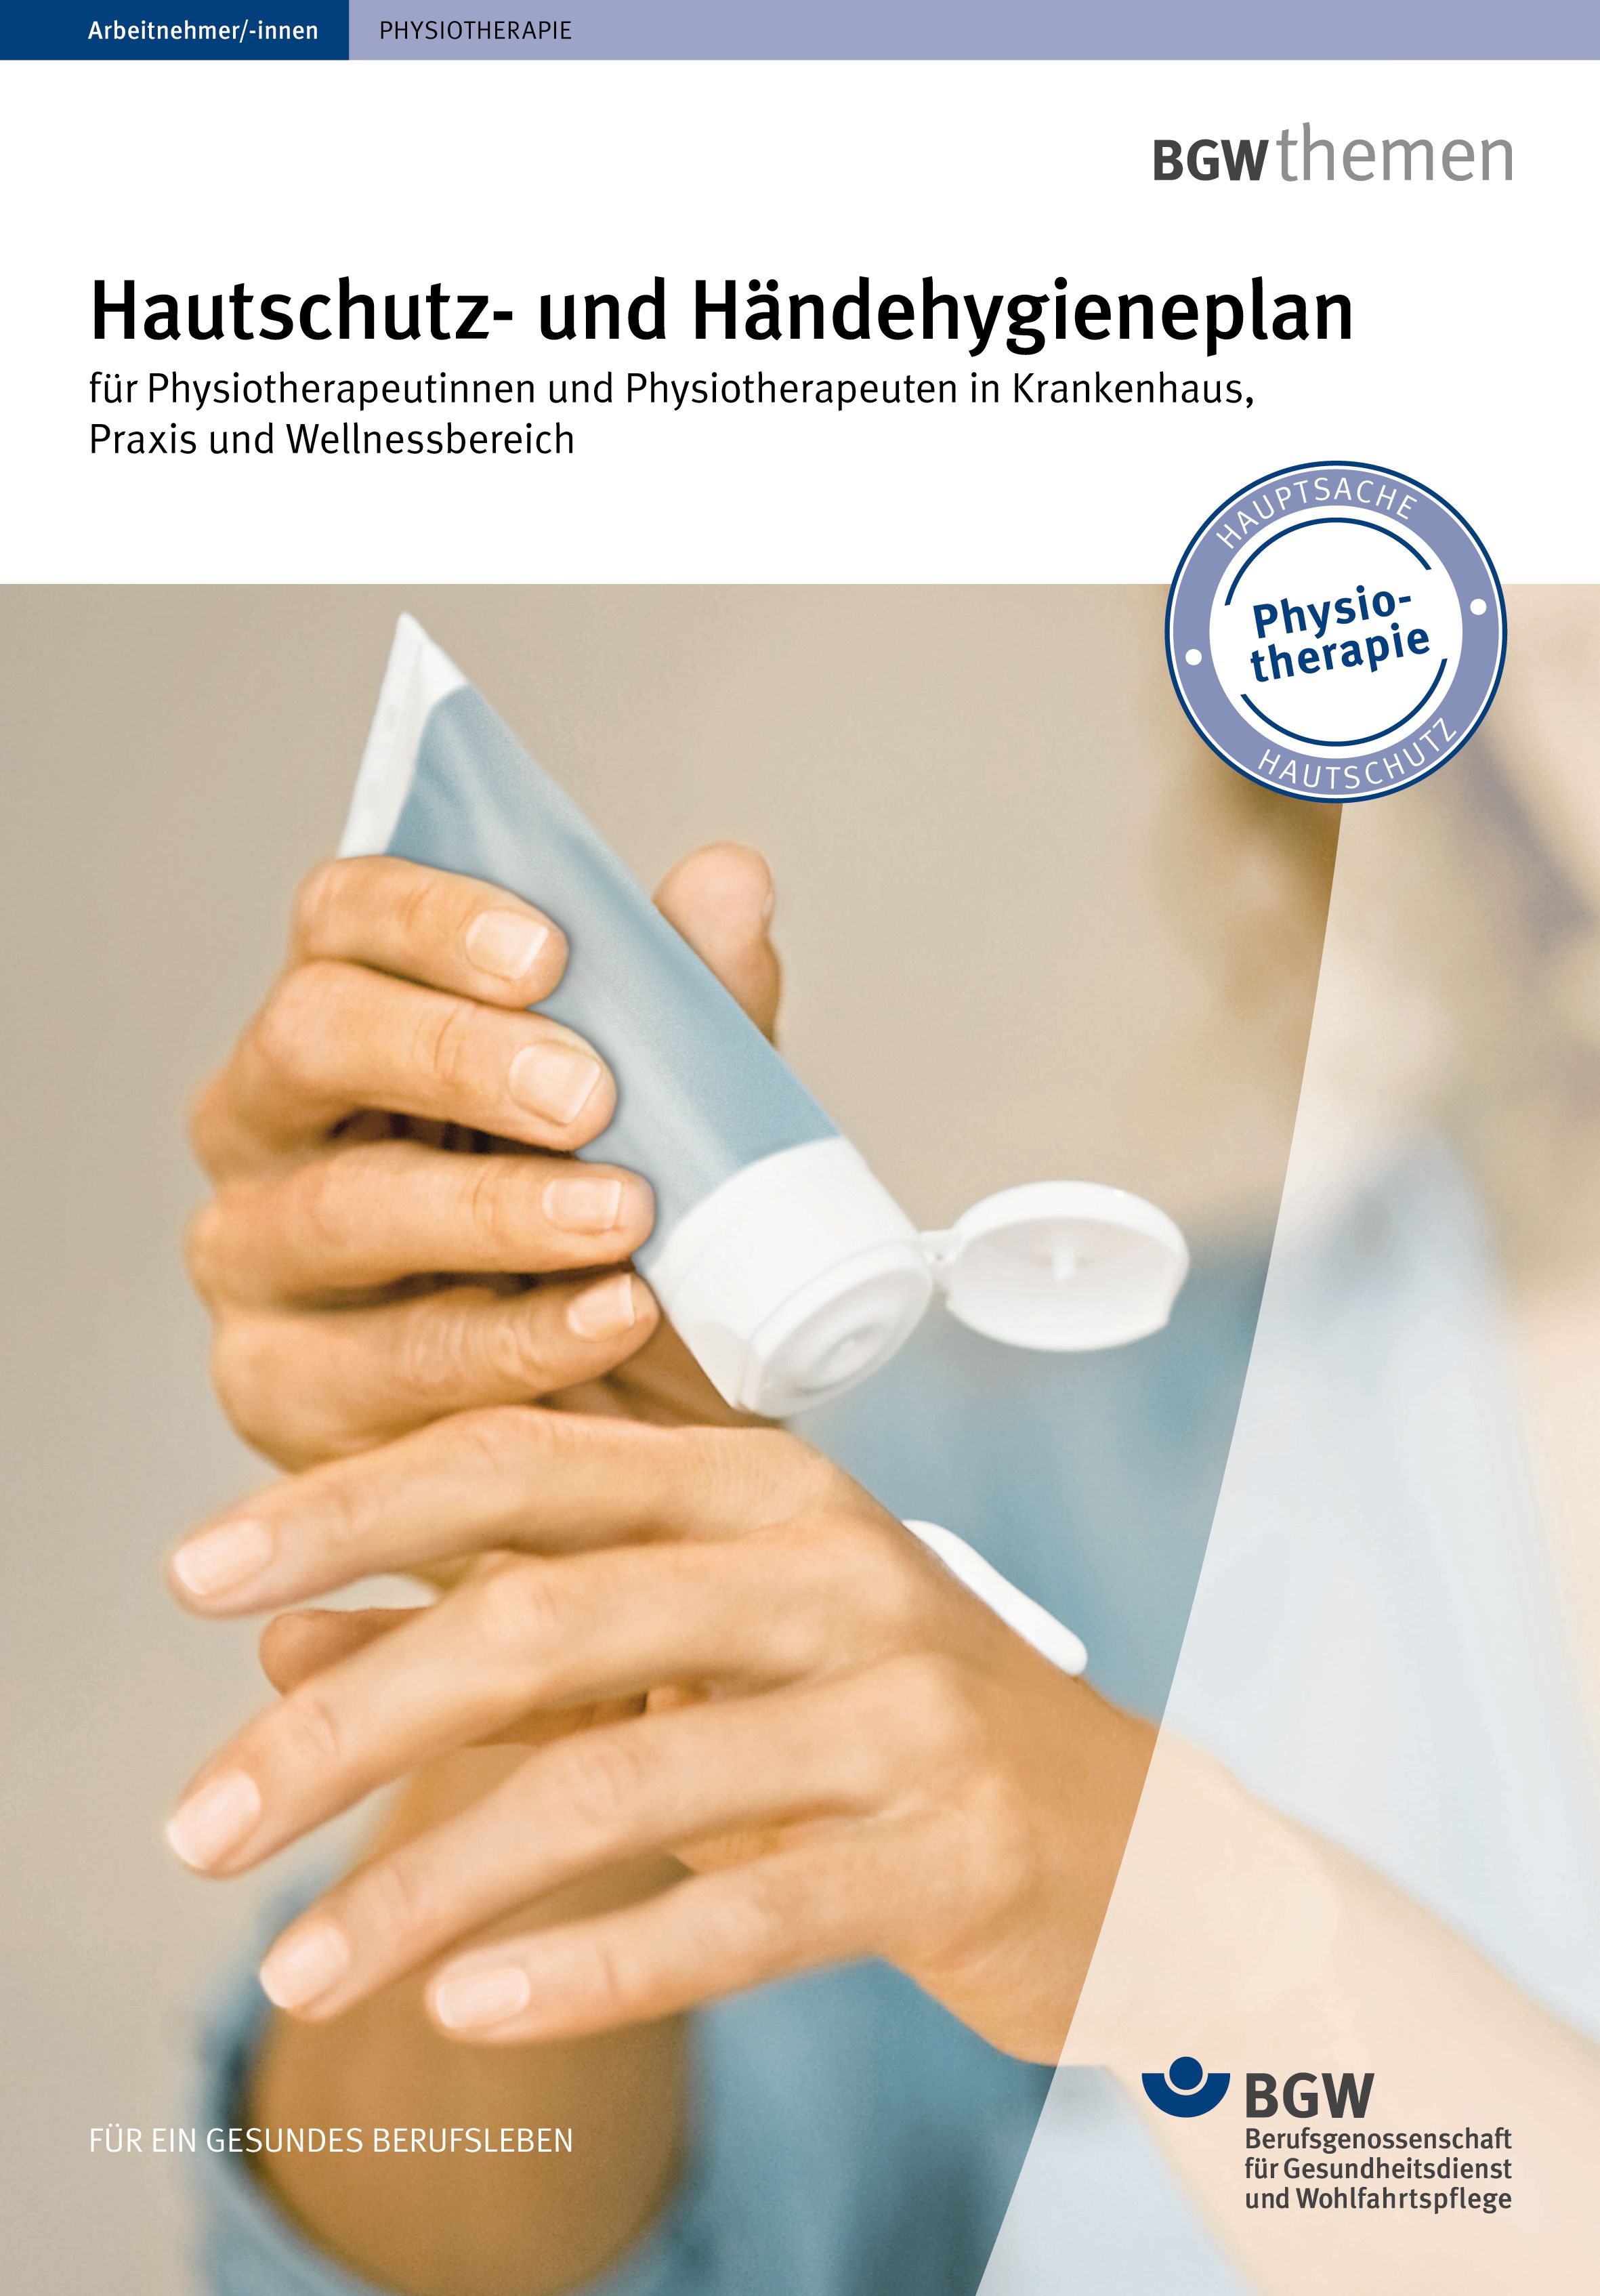 Titel: Hautschutz- und Händehygieneplan für die Physiotherapie - Junge Frau appliziert sich Handcreme aus der Tube auf die Hand